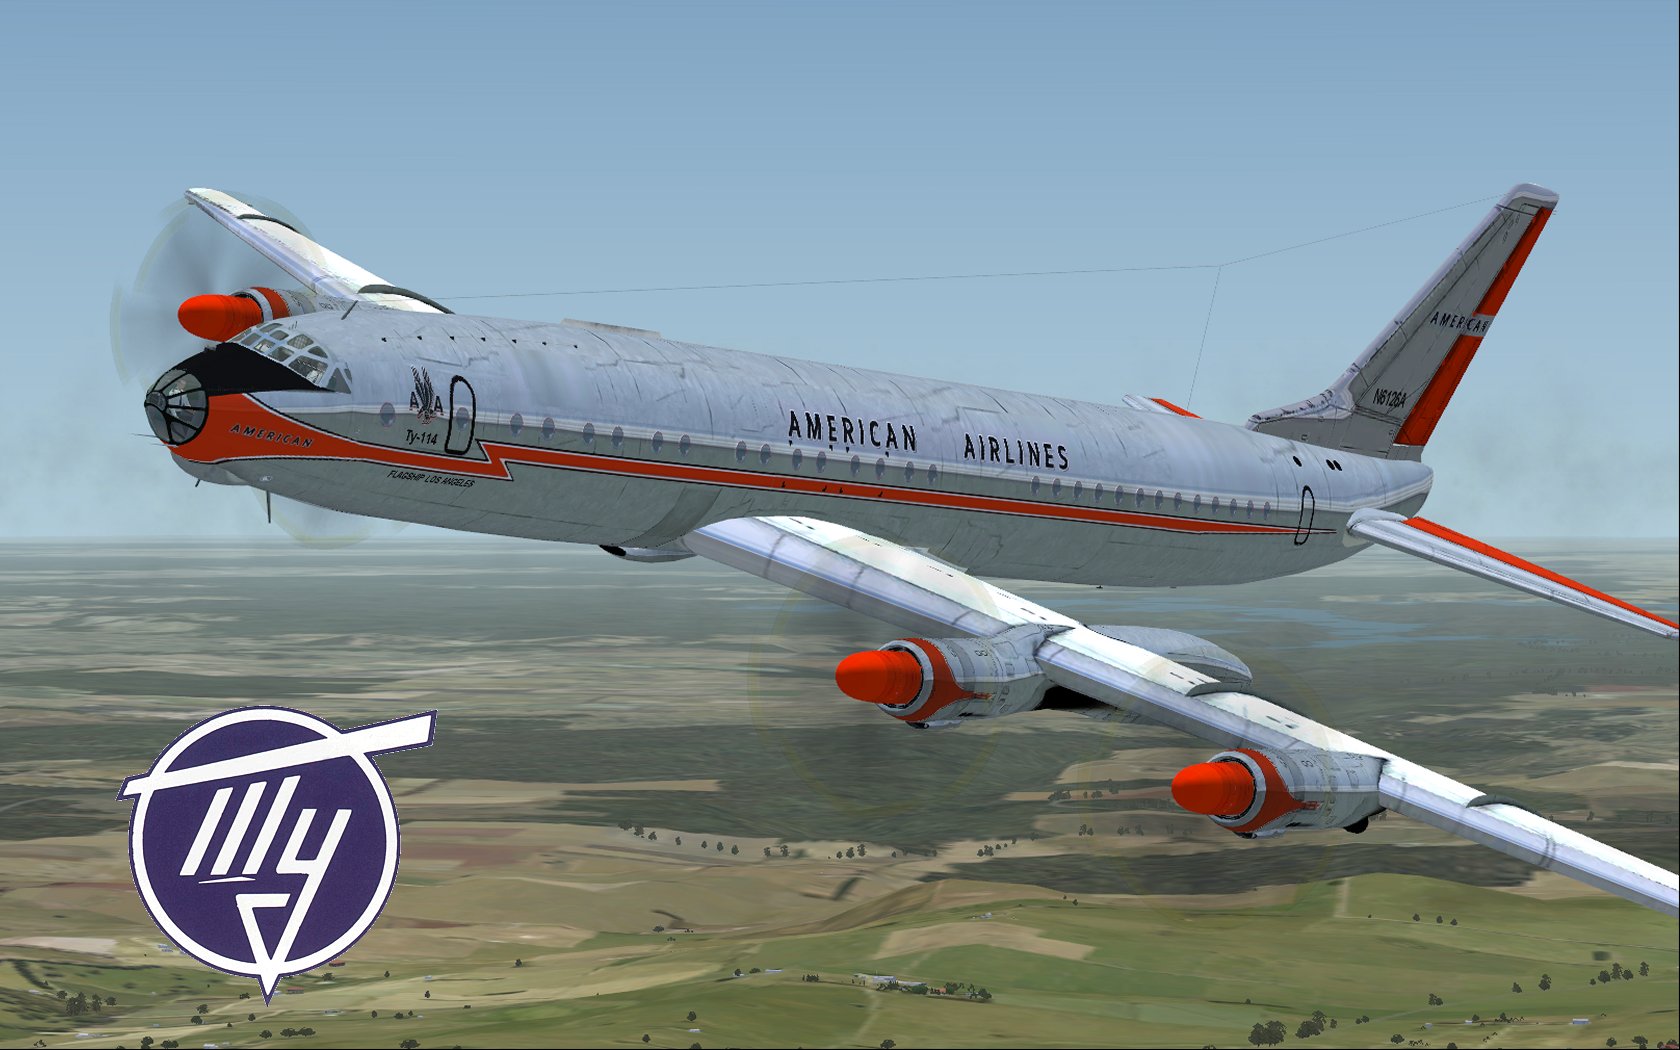 Tupolev Tu-114 Backgrounds, Compatible - PC, Mobile, Gadgets| 1680x1050 px